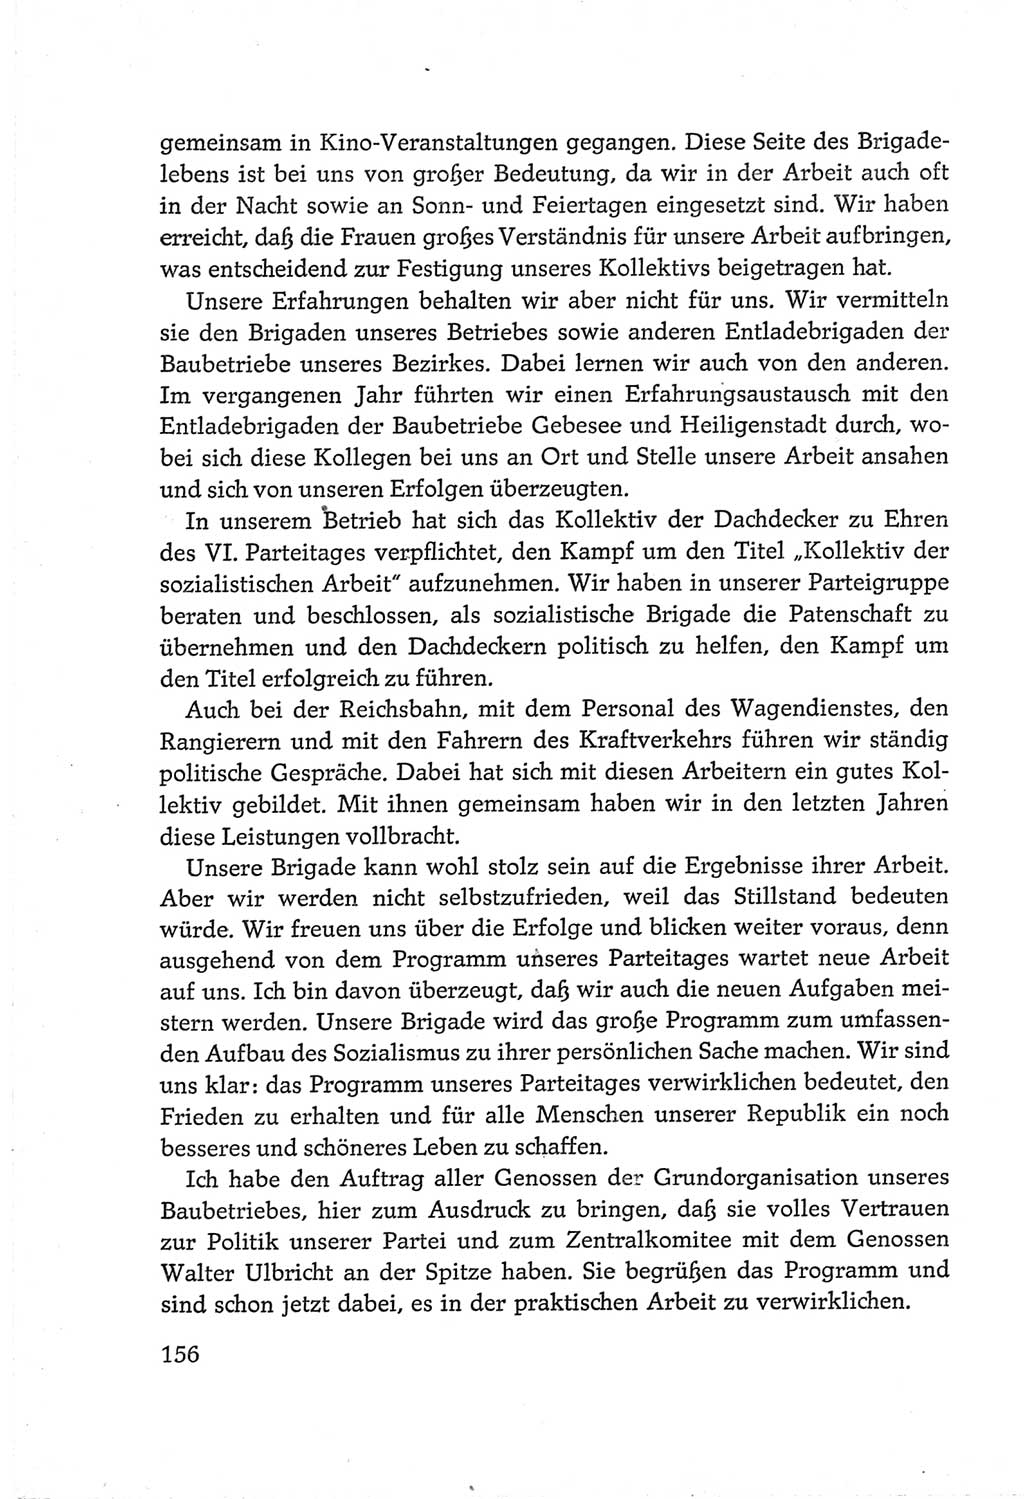 Protokoll der Verhandlungen des Ⅵ. Parteitages der Sozialistischen Einheitspartei Deutschlands (SED) [Deutsche Demokratische Republik (DDR)] 1963, Band Ⅲ, Seite 156 (Prot. Verh. Ⅵ. PT SED DDR 1963, Bd. Ⅲ, S. 156)